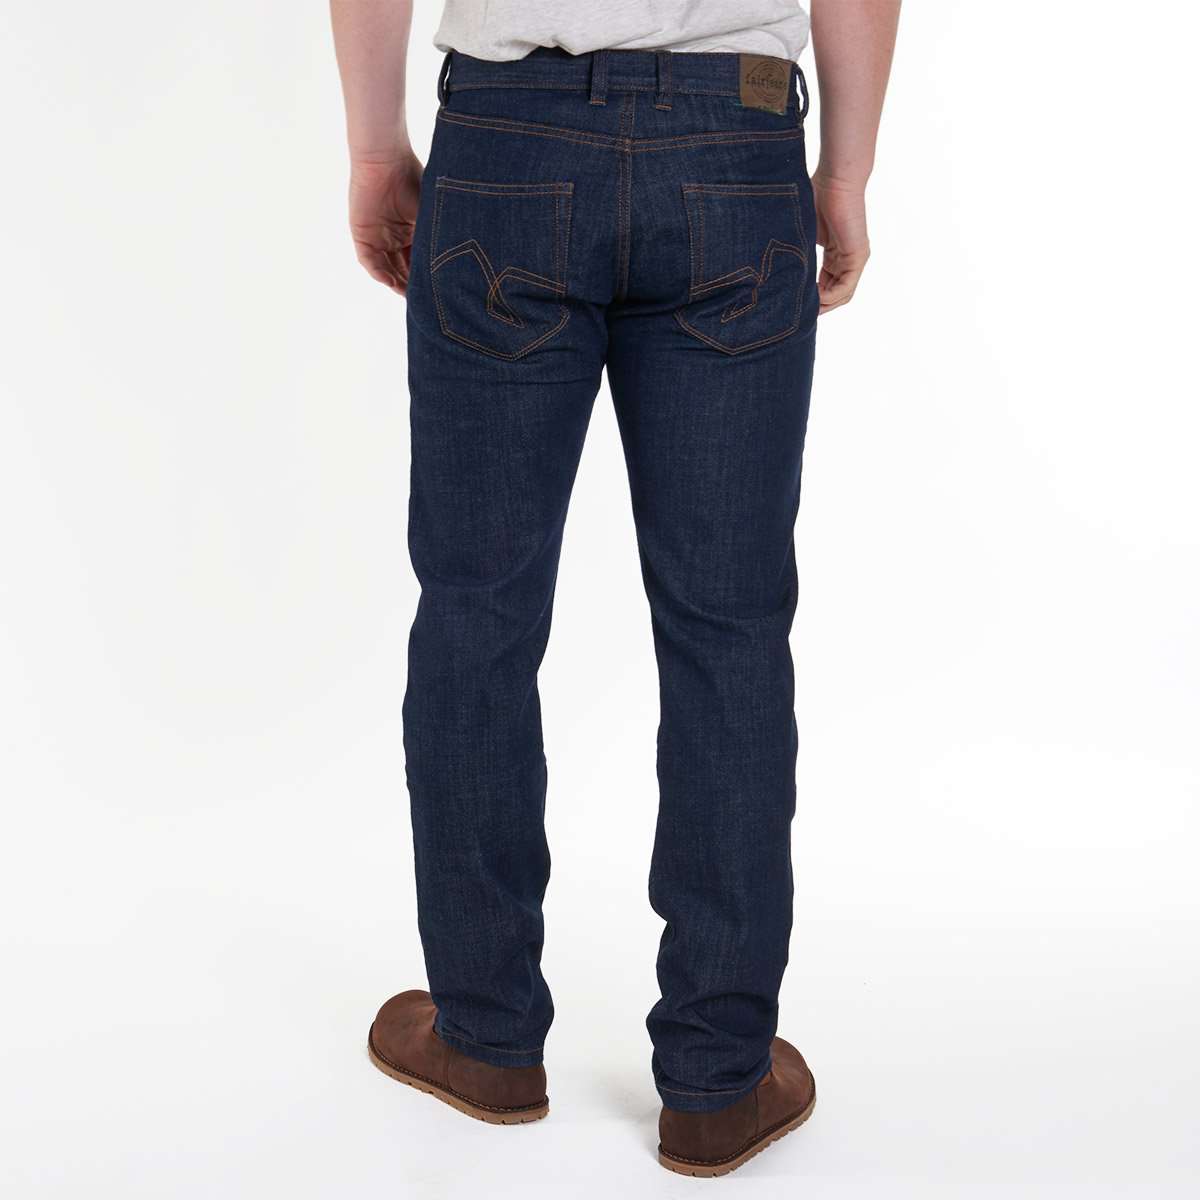 Nachhaltige Bio- Herren Jeans für einen bewussten Lebensstil – fairjeans